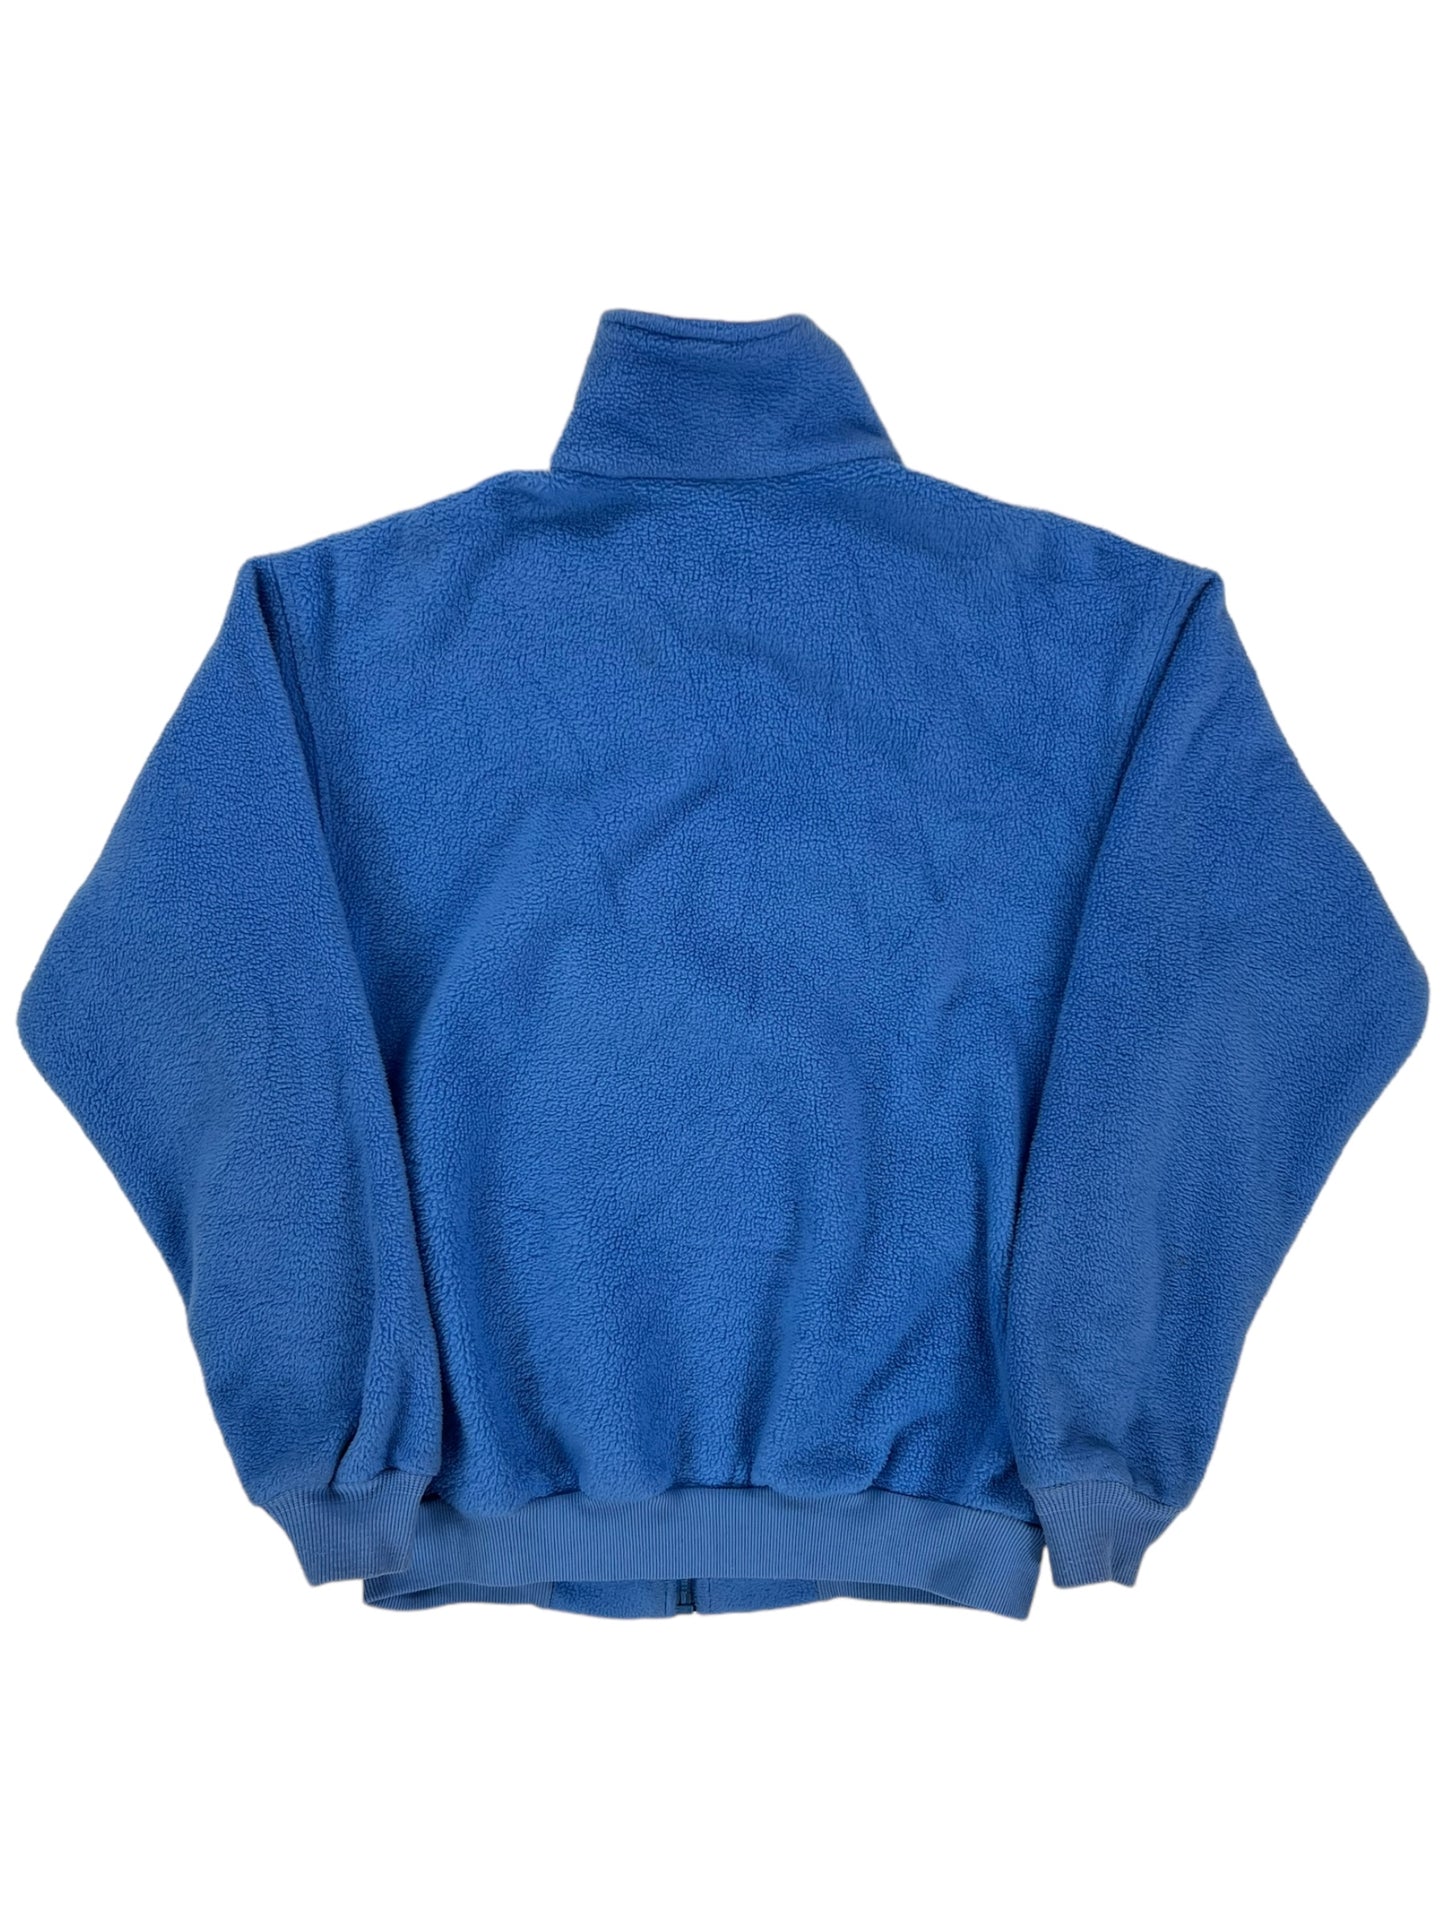 Vintage 90s Patagonia baby blue women’s full zip fleece (S)